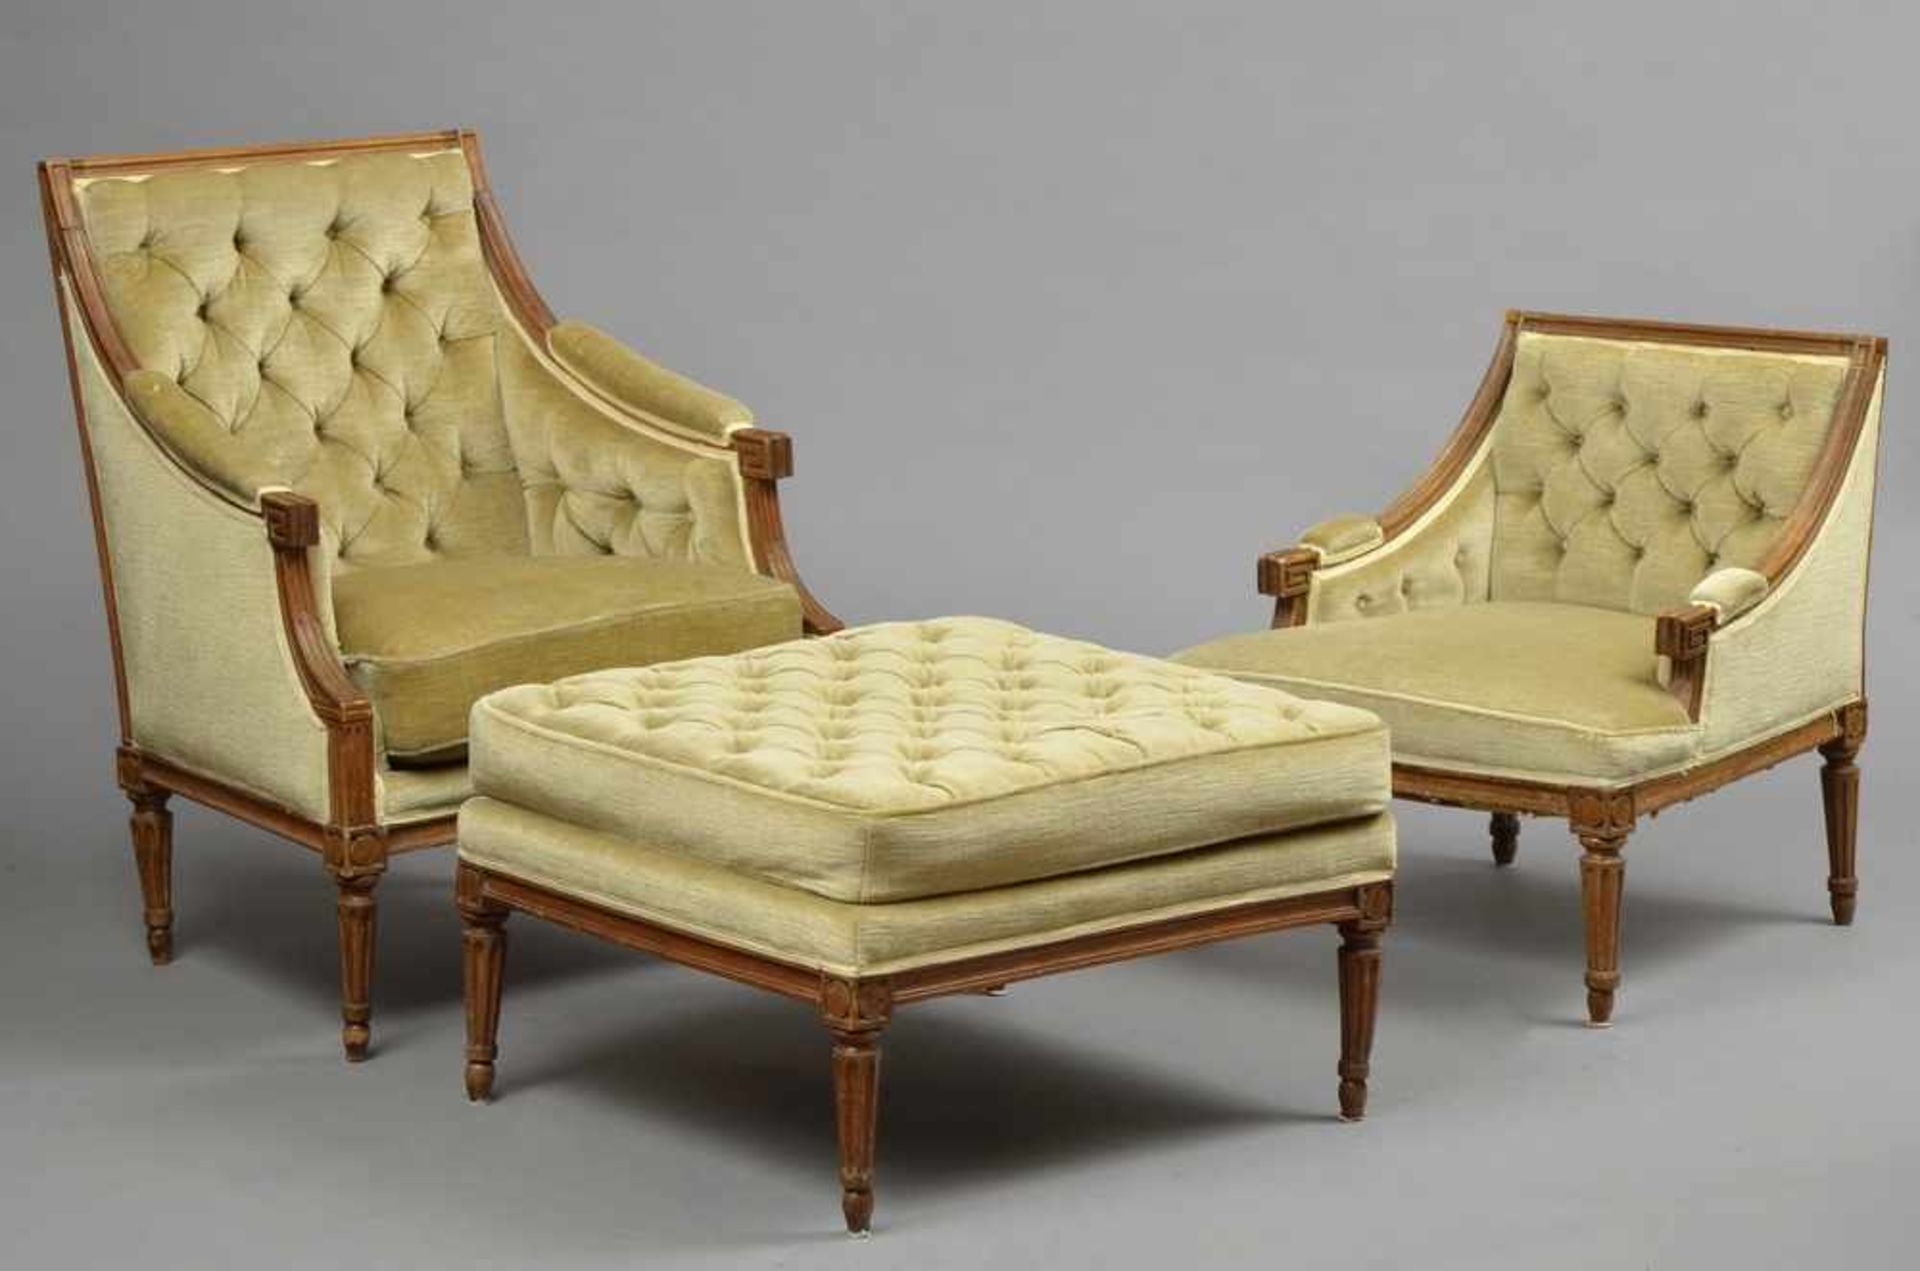 3 Teile klassizistische Eichen Sitzmöbel in strenger Form mit kannelierten Beinen: 2 Sessel mit